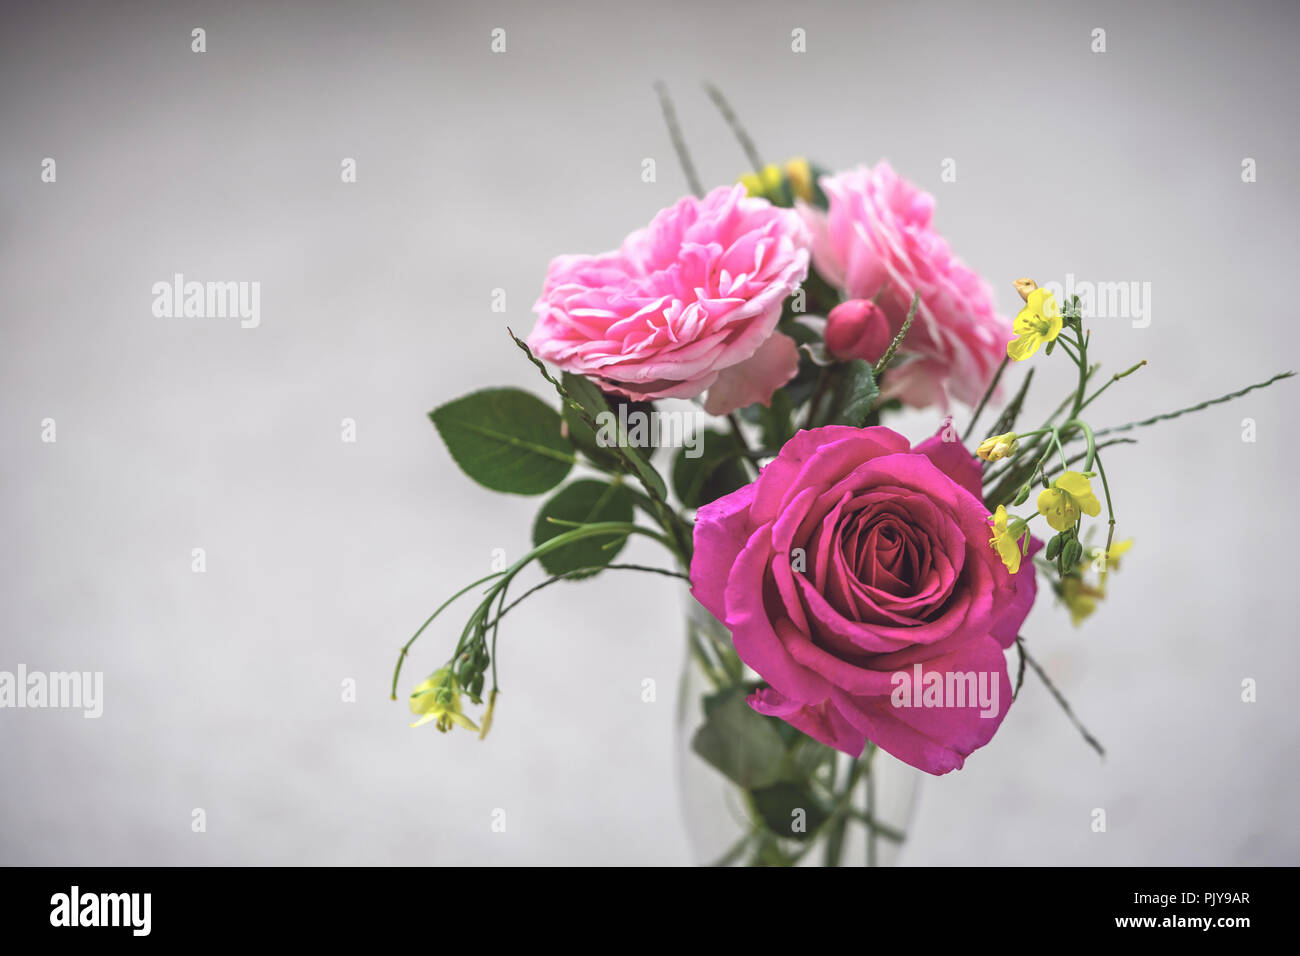 Un bouquet de roses roses et jaune renoncule des prés de fleurs dans un vase à l'arrière-plan gris Banque D'Images